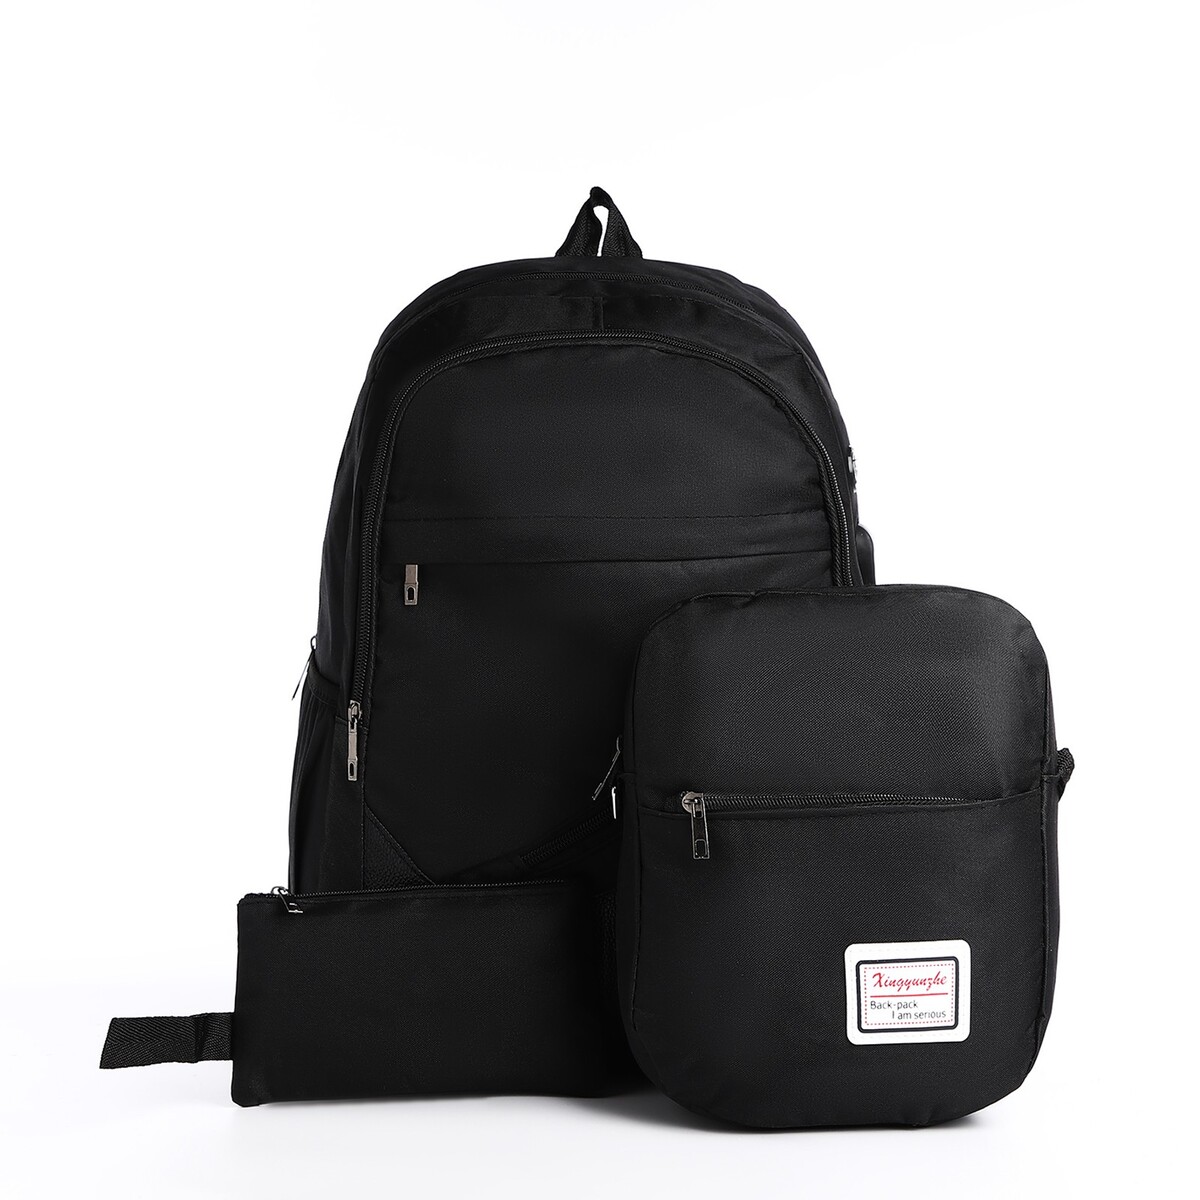 Рюкзак на молнии, с usb, 4 наружных кармана, сумка, пенал, цвет черный